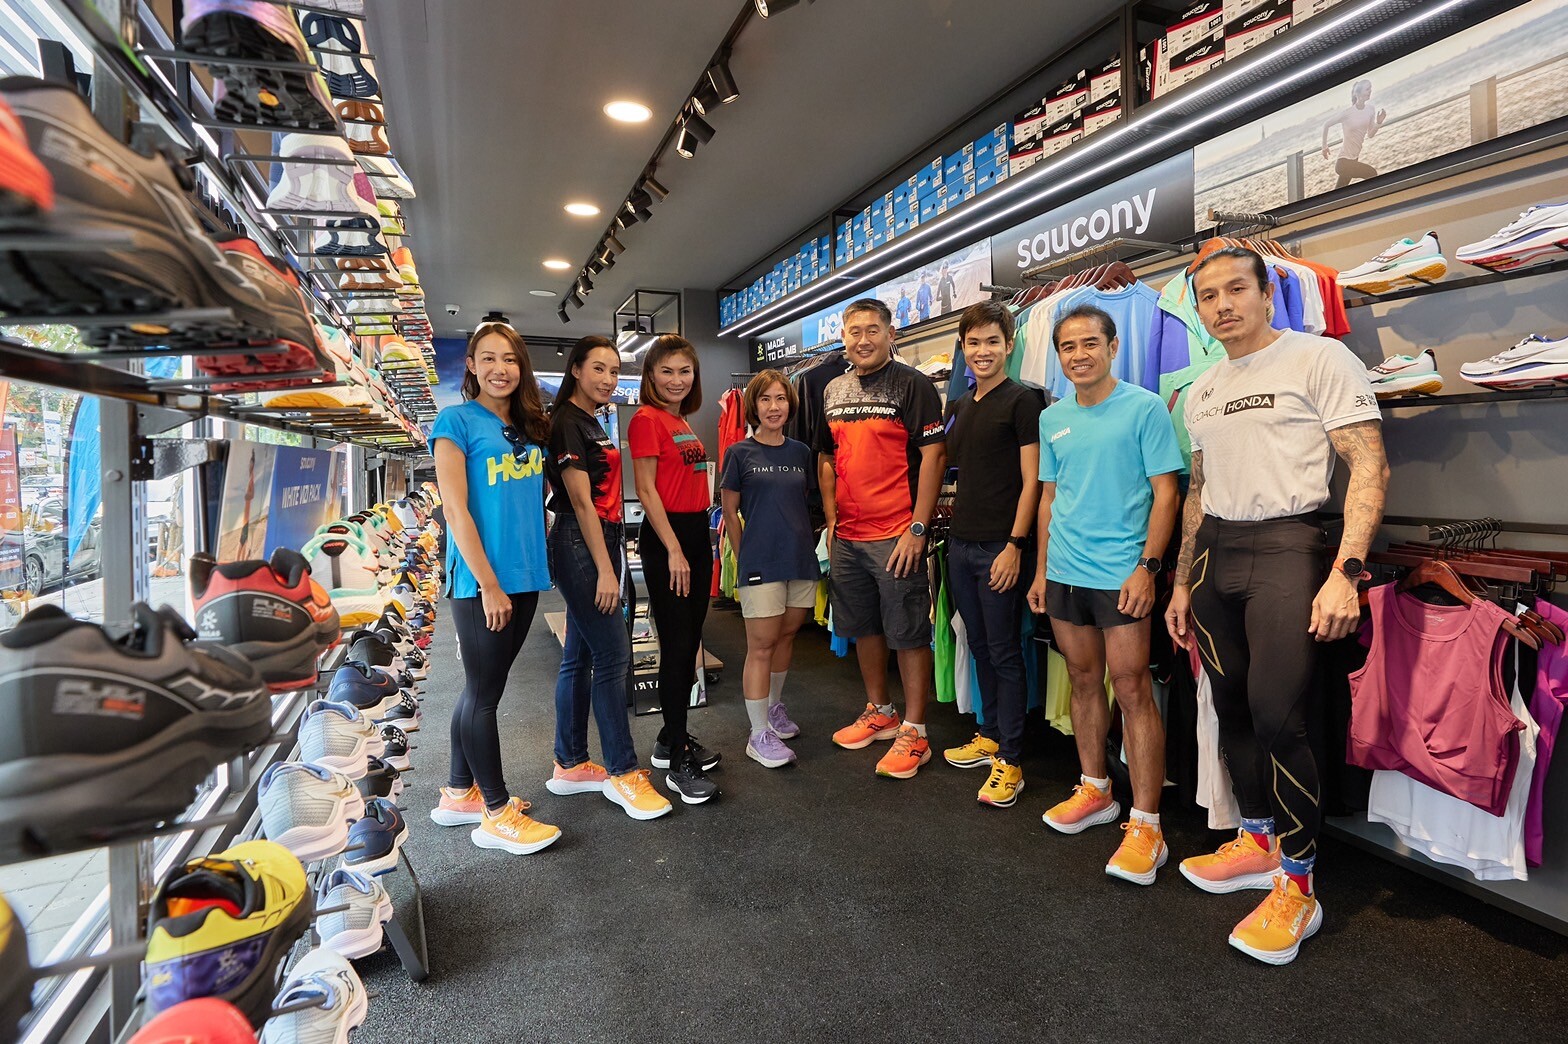 สวรรค์ของนักวิ่งที่ชื่นชอบรองเท้า ต้องไม่พลาด! พาราไดซ์ พาร์ค ดึงร้านแบรนด์ดัง REV RUNNR เปิดสาขาใหม่